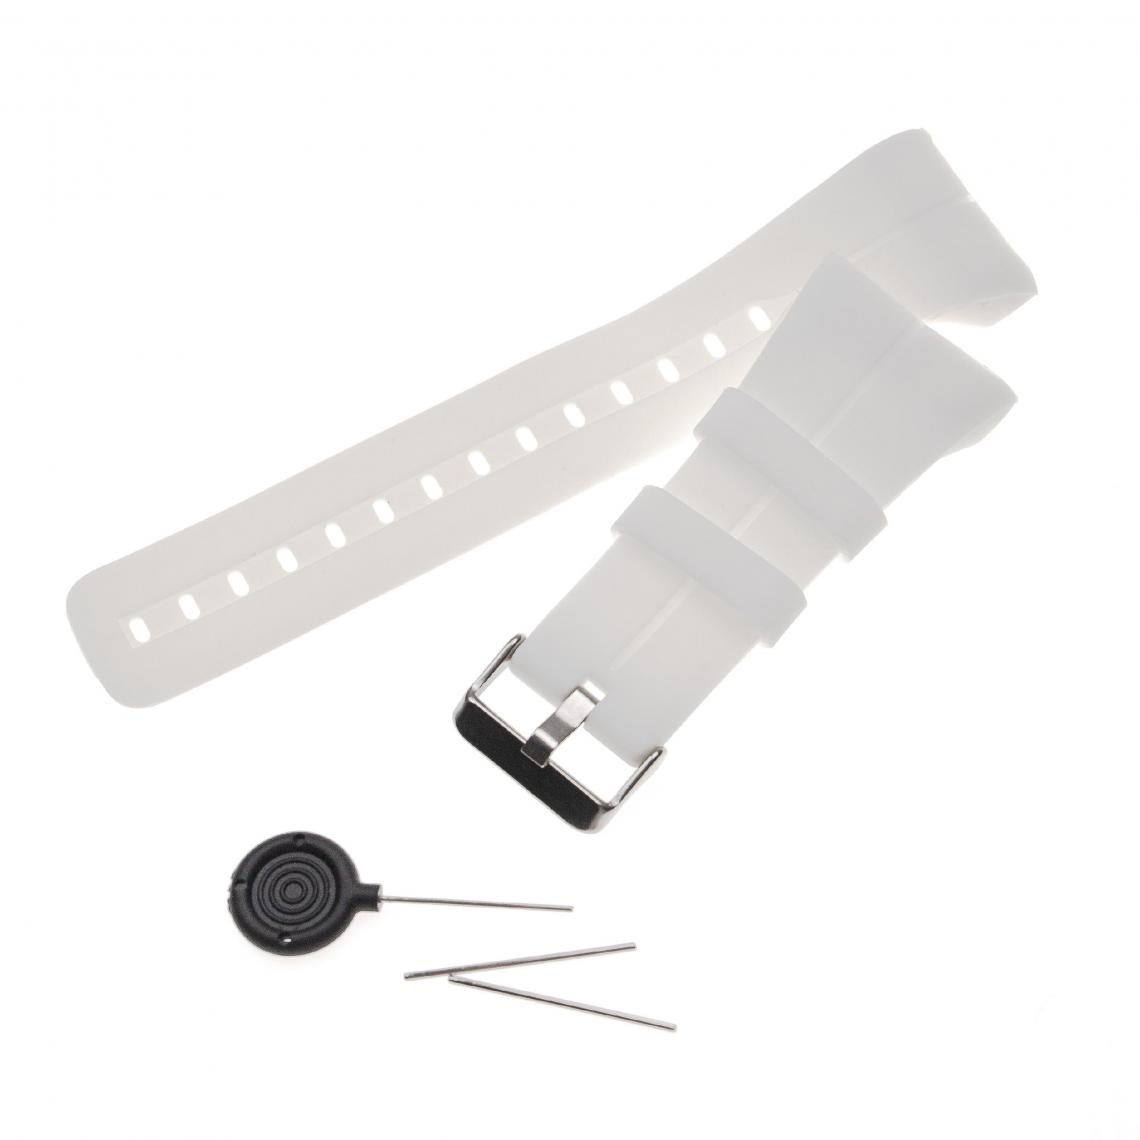 Vhbw - vhbw bracelet compatible avec Polar M400, M430 montre connectée - 14,5 + 8,9 cm silicone blanc - Accessoires montres connectées